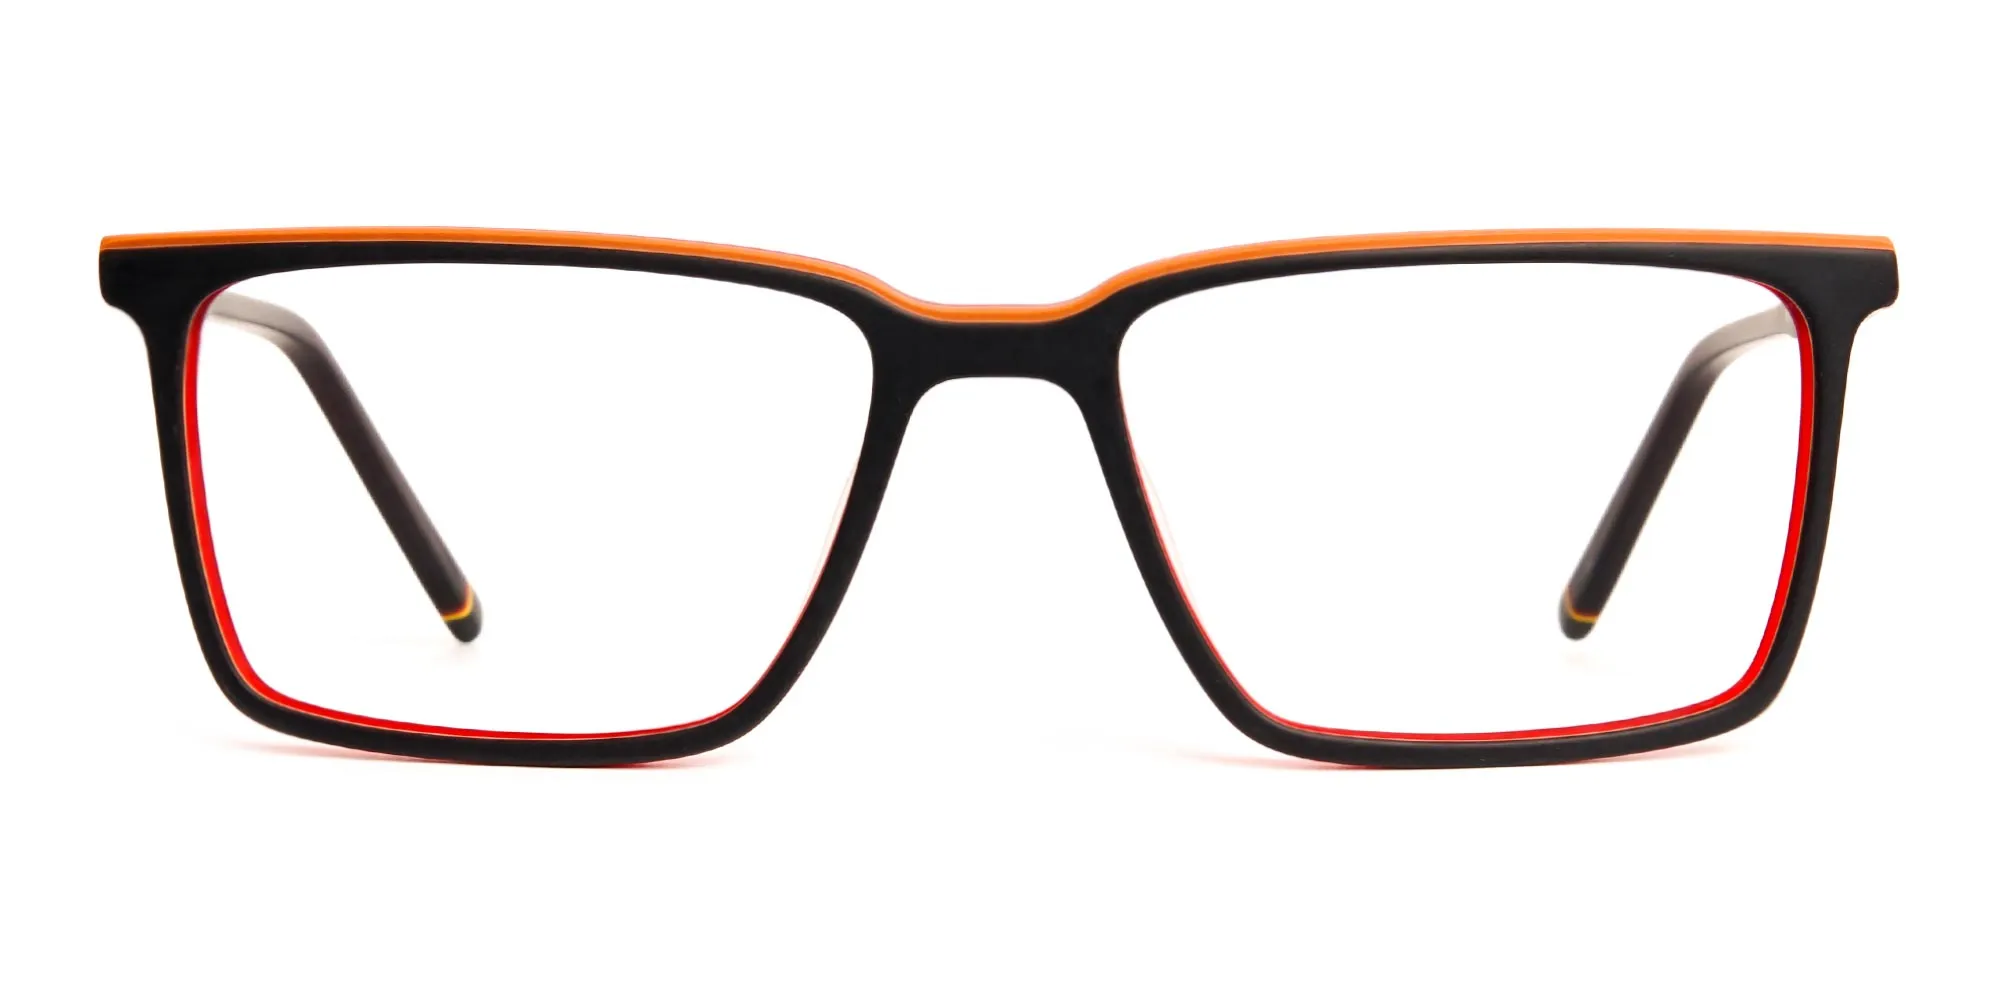 black and orange rectangular full rim glasses frames-2